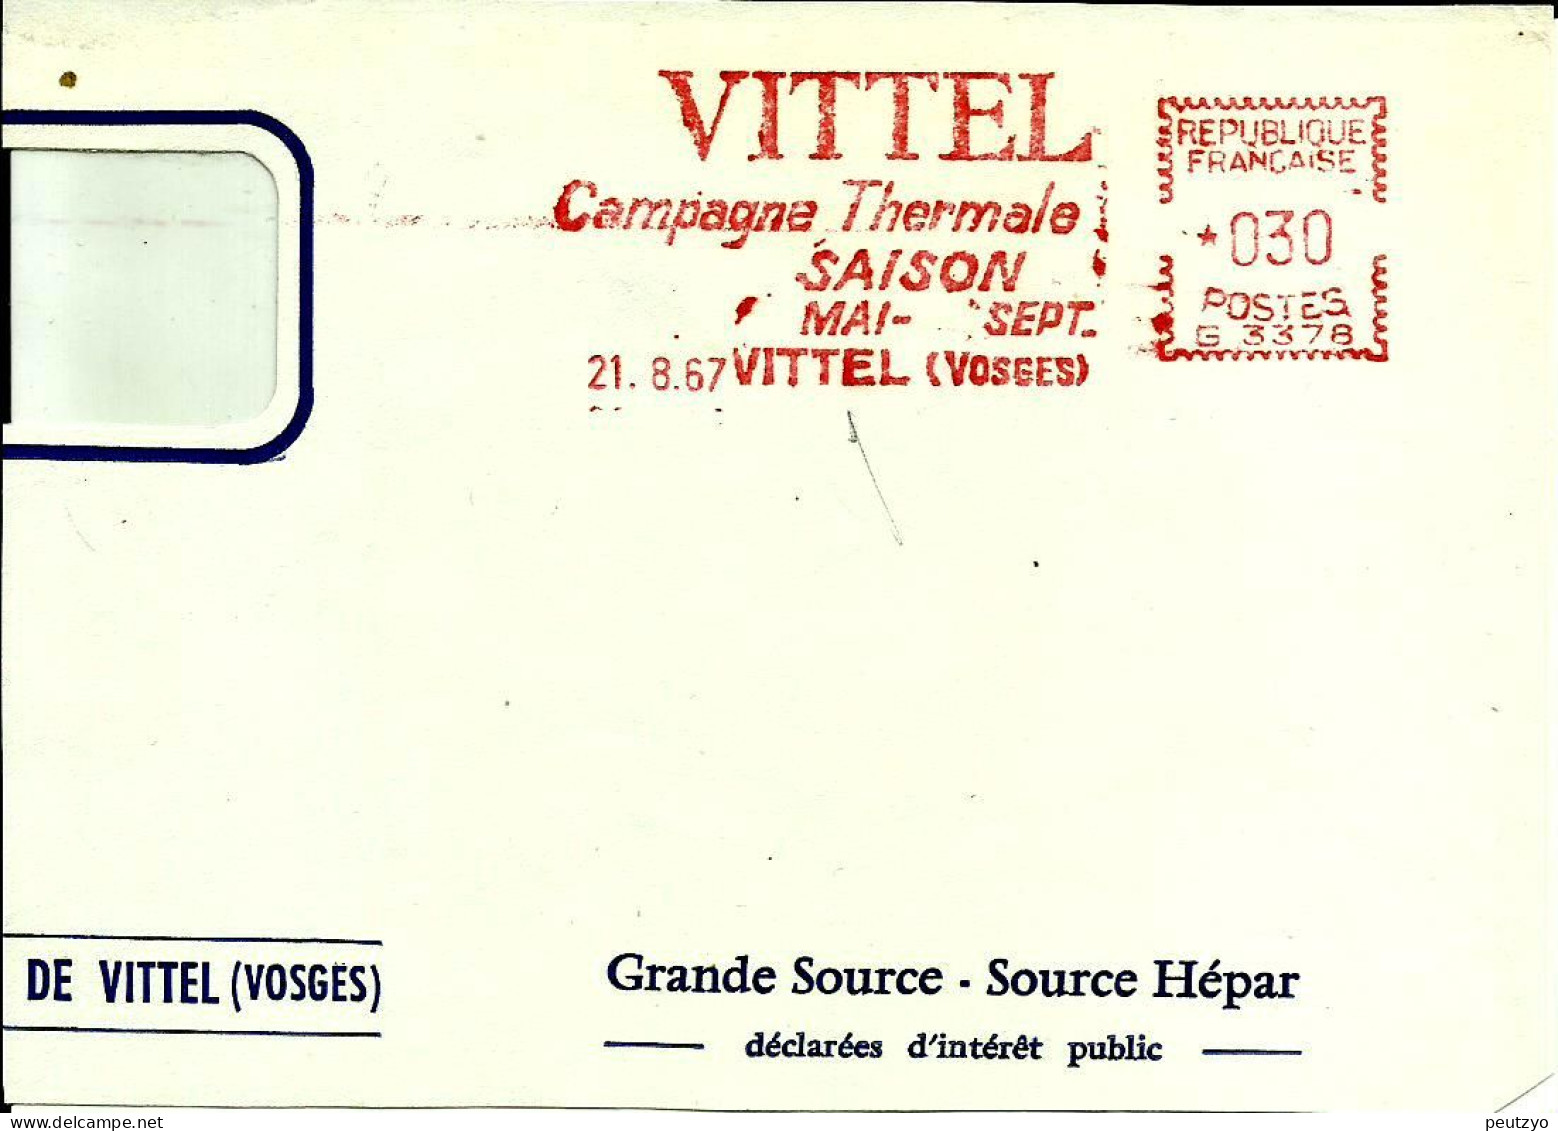 Ema Havas G 1967 Vittel Campagne Thermale Saison Boissons Eau Metier Industrie Cure 88 Vosges C29/54 - Kuurwezen